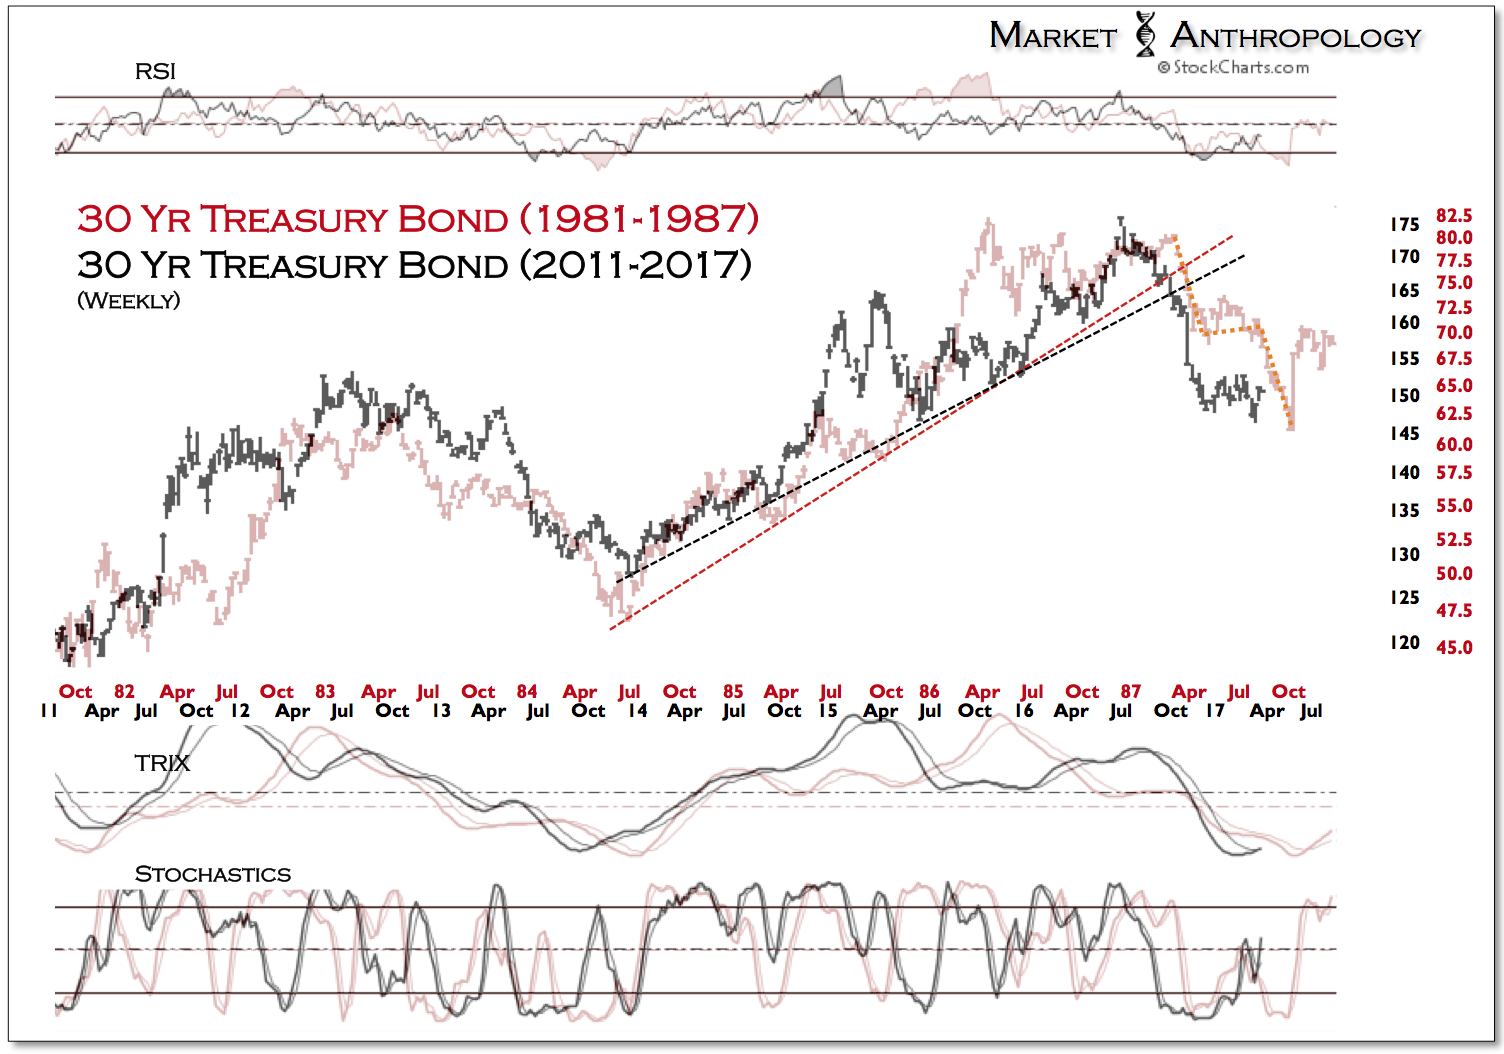 Weekly 30-Y Treasury Bond 1981-1987 vs 2011-2017